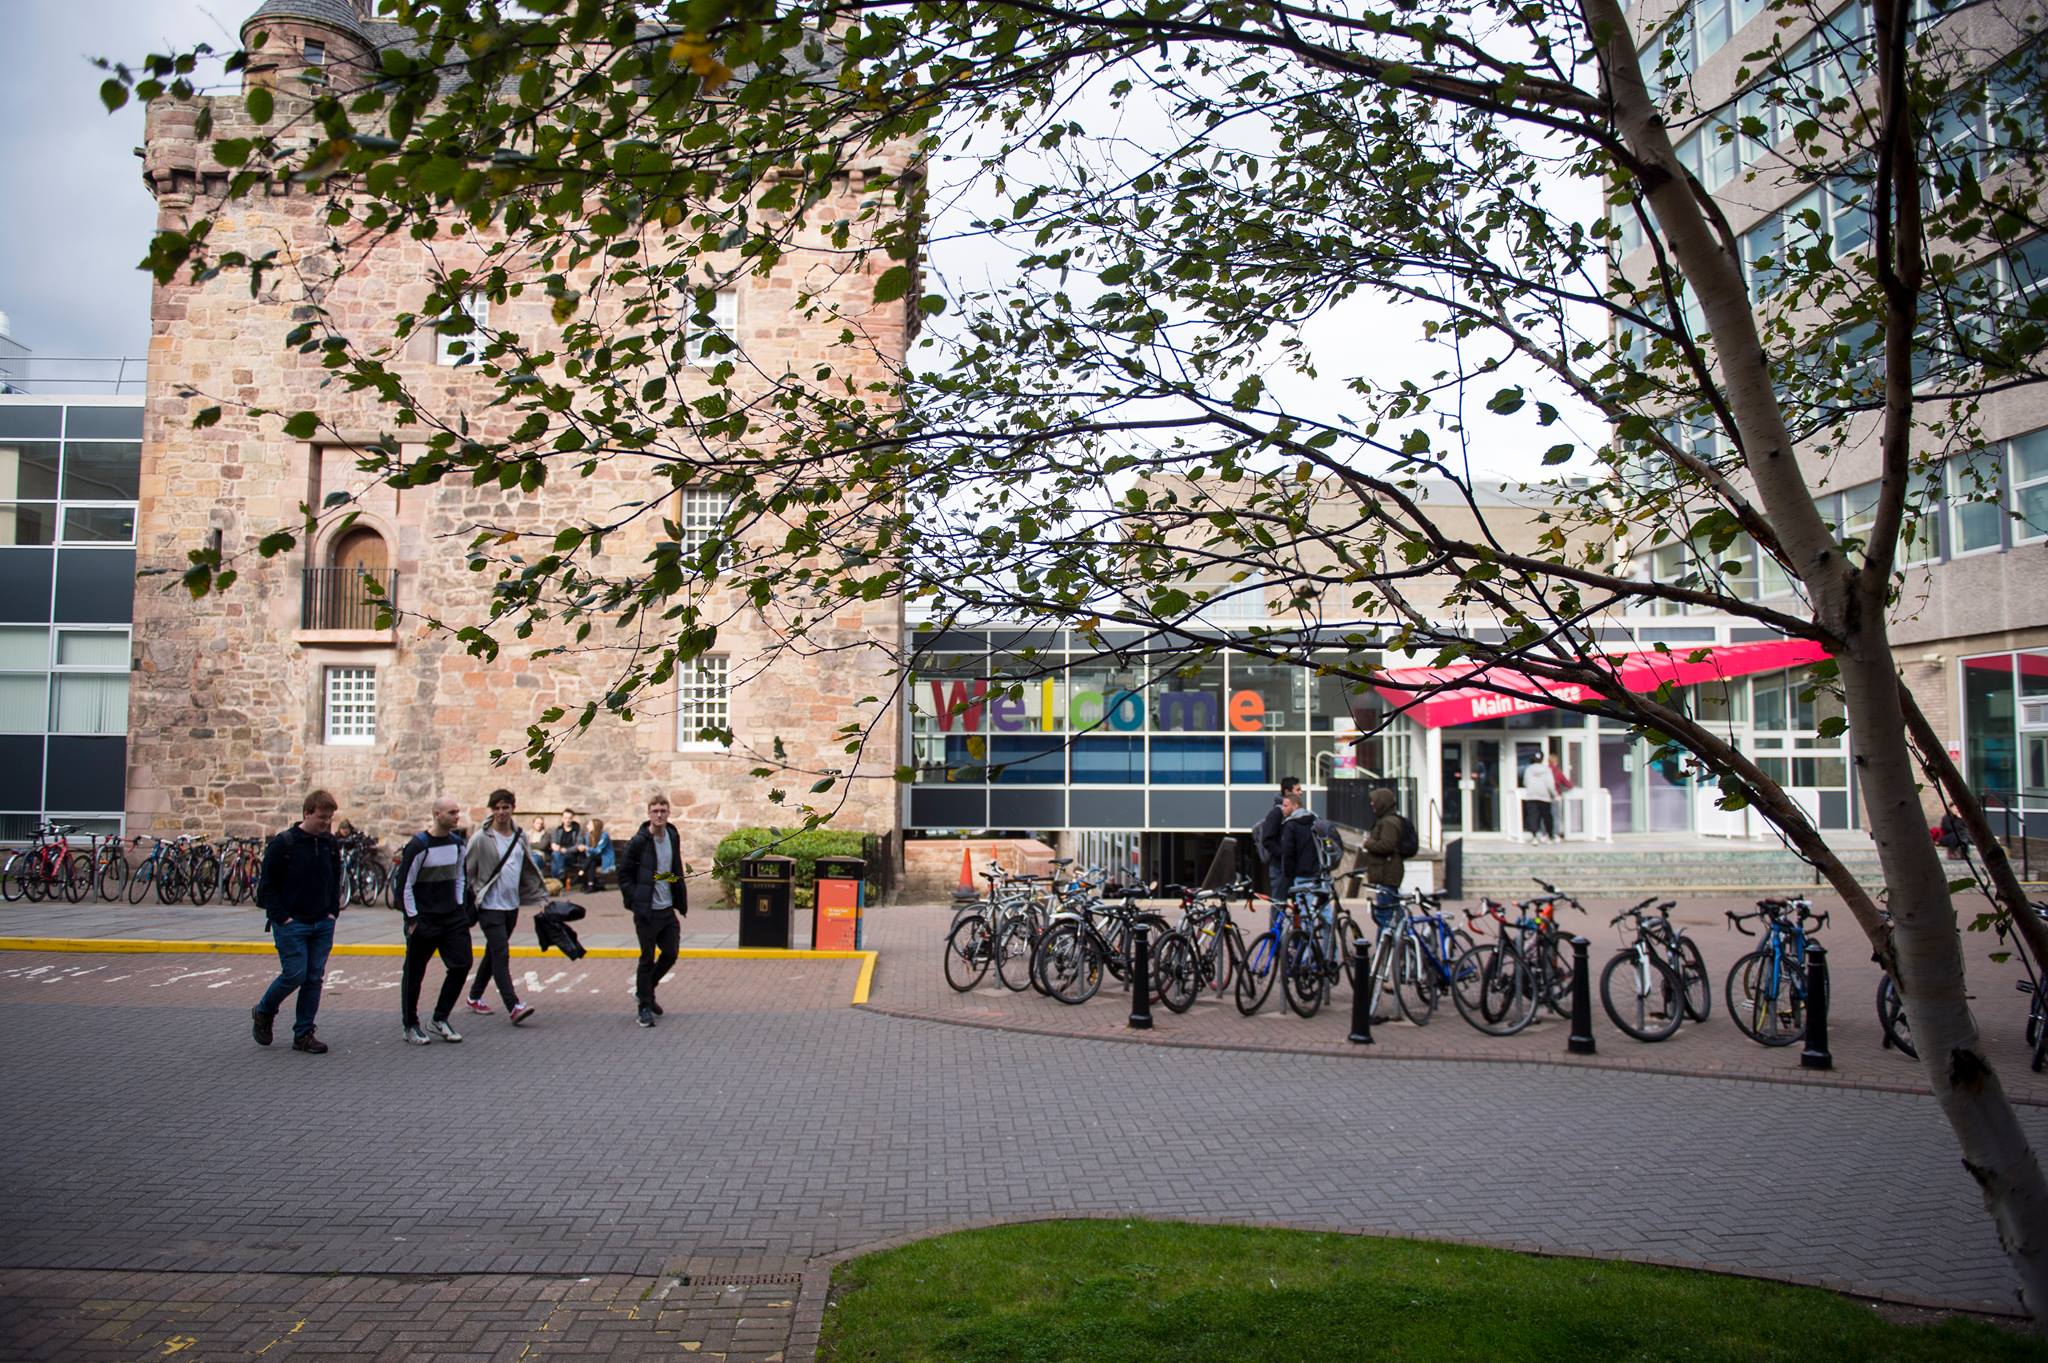 جامعة إدنبرة نابير – University of Edinburgh UoE